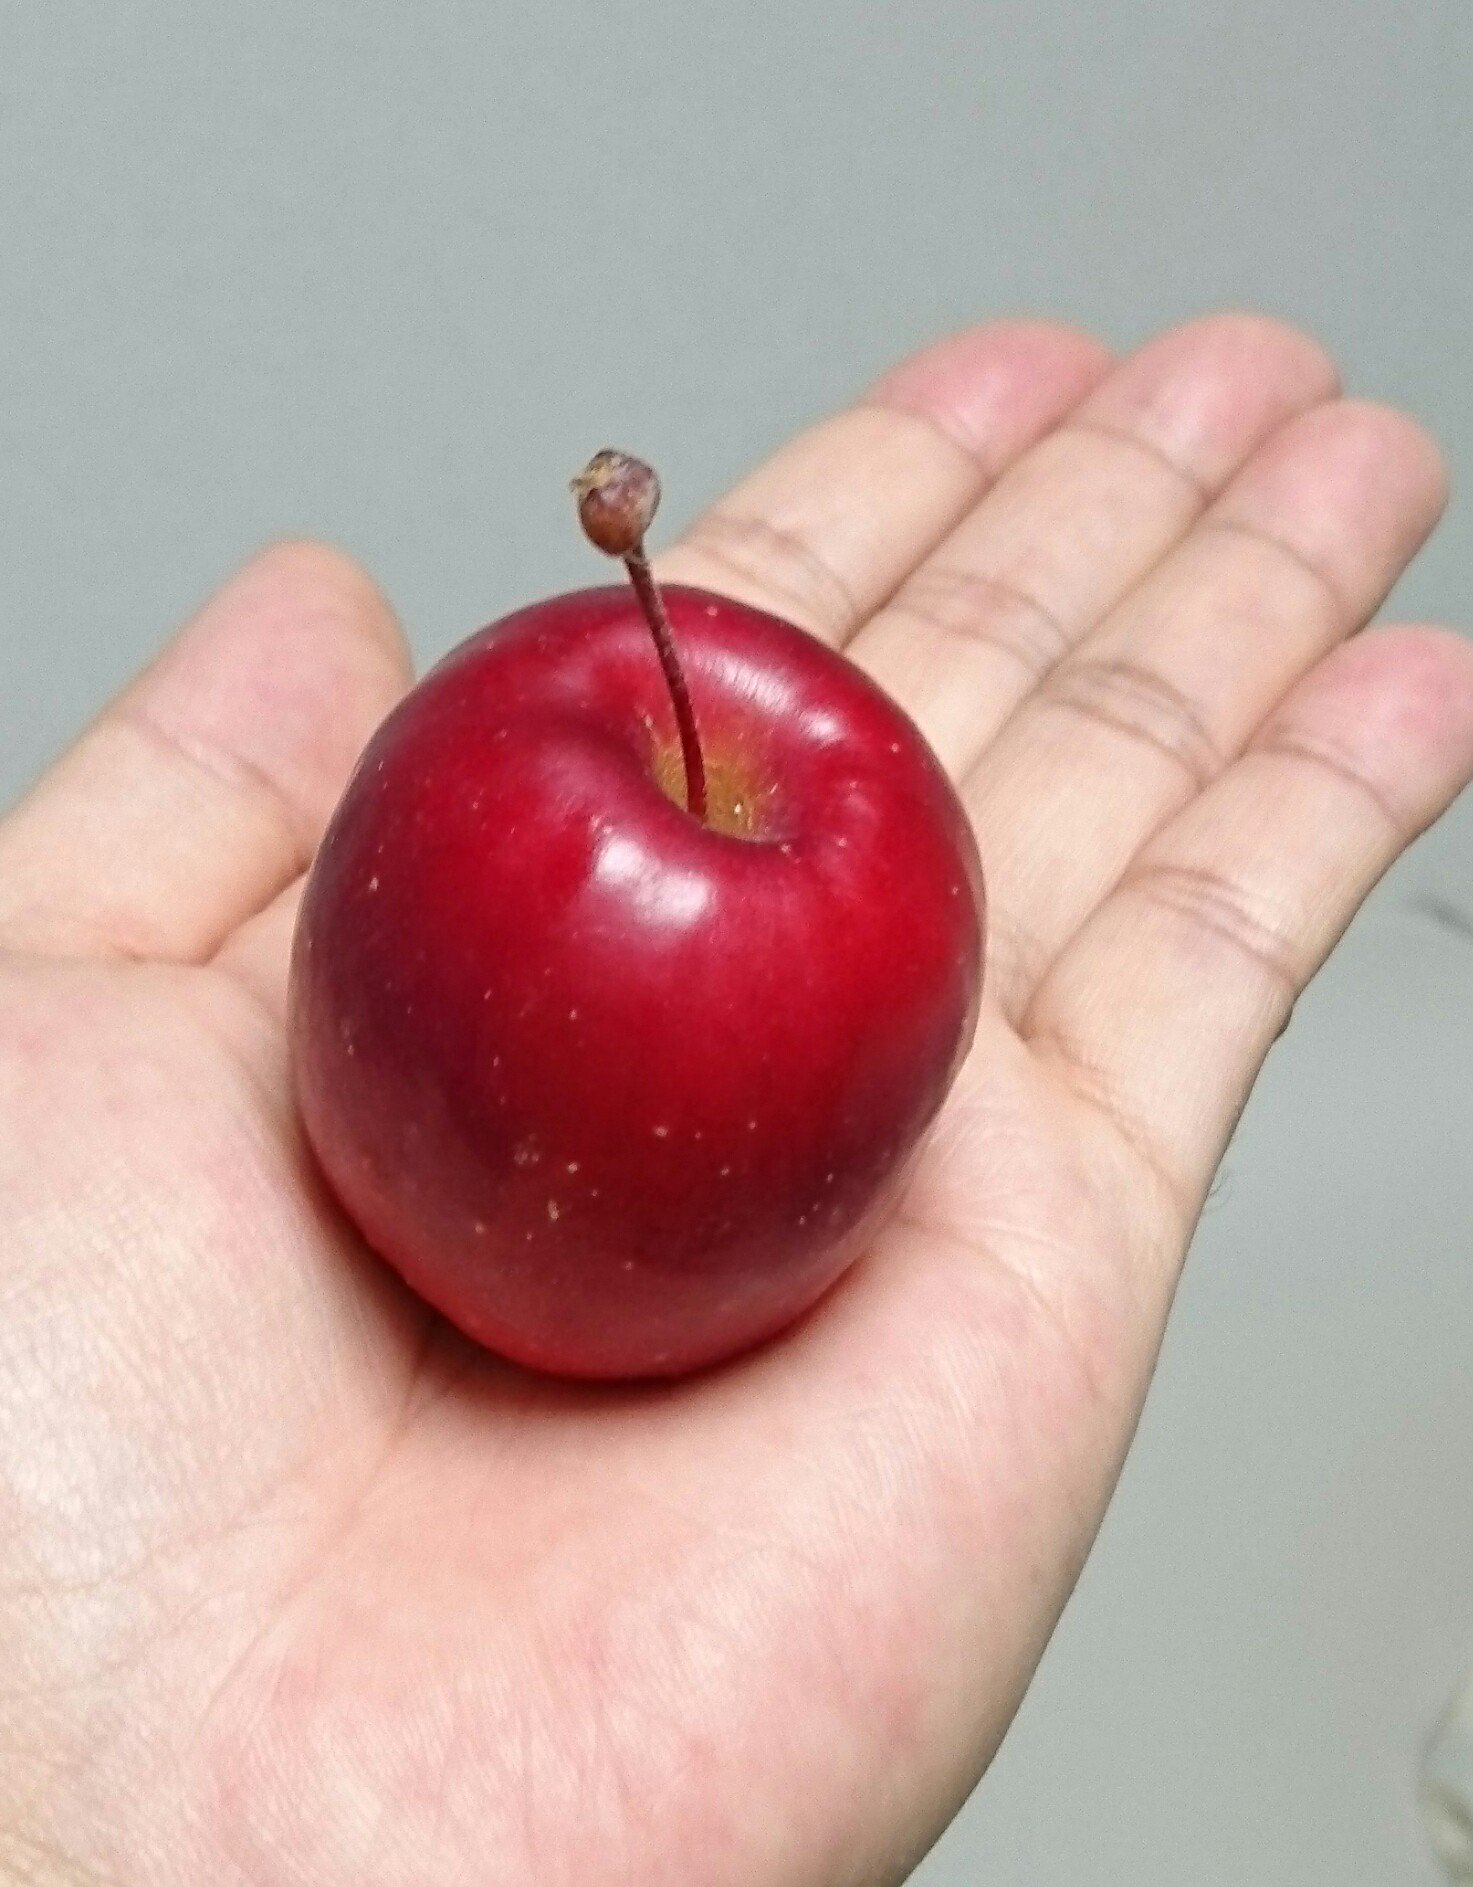 ハヤ3ケン 見慣れない小さいりんごが売ってたので買ってみた アルプス乙女 りんご 飴とかに使うやつ ちょっとやわらかいけど甘くて 糖度14 5 美味しかったです 並べてるりんごは一般的な大きさのふじ T Co Hjlsvckbuu Twitter